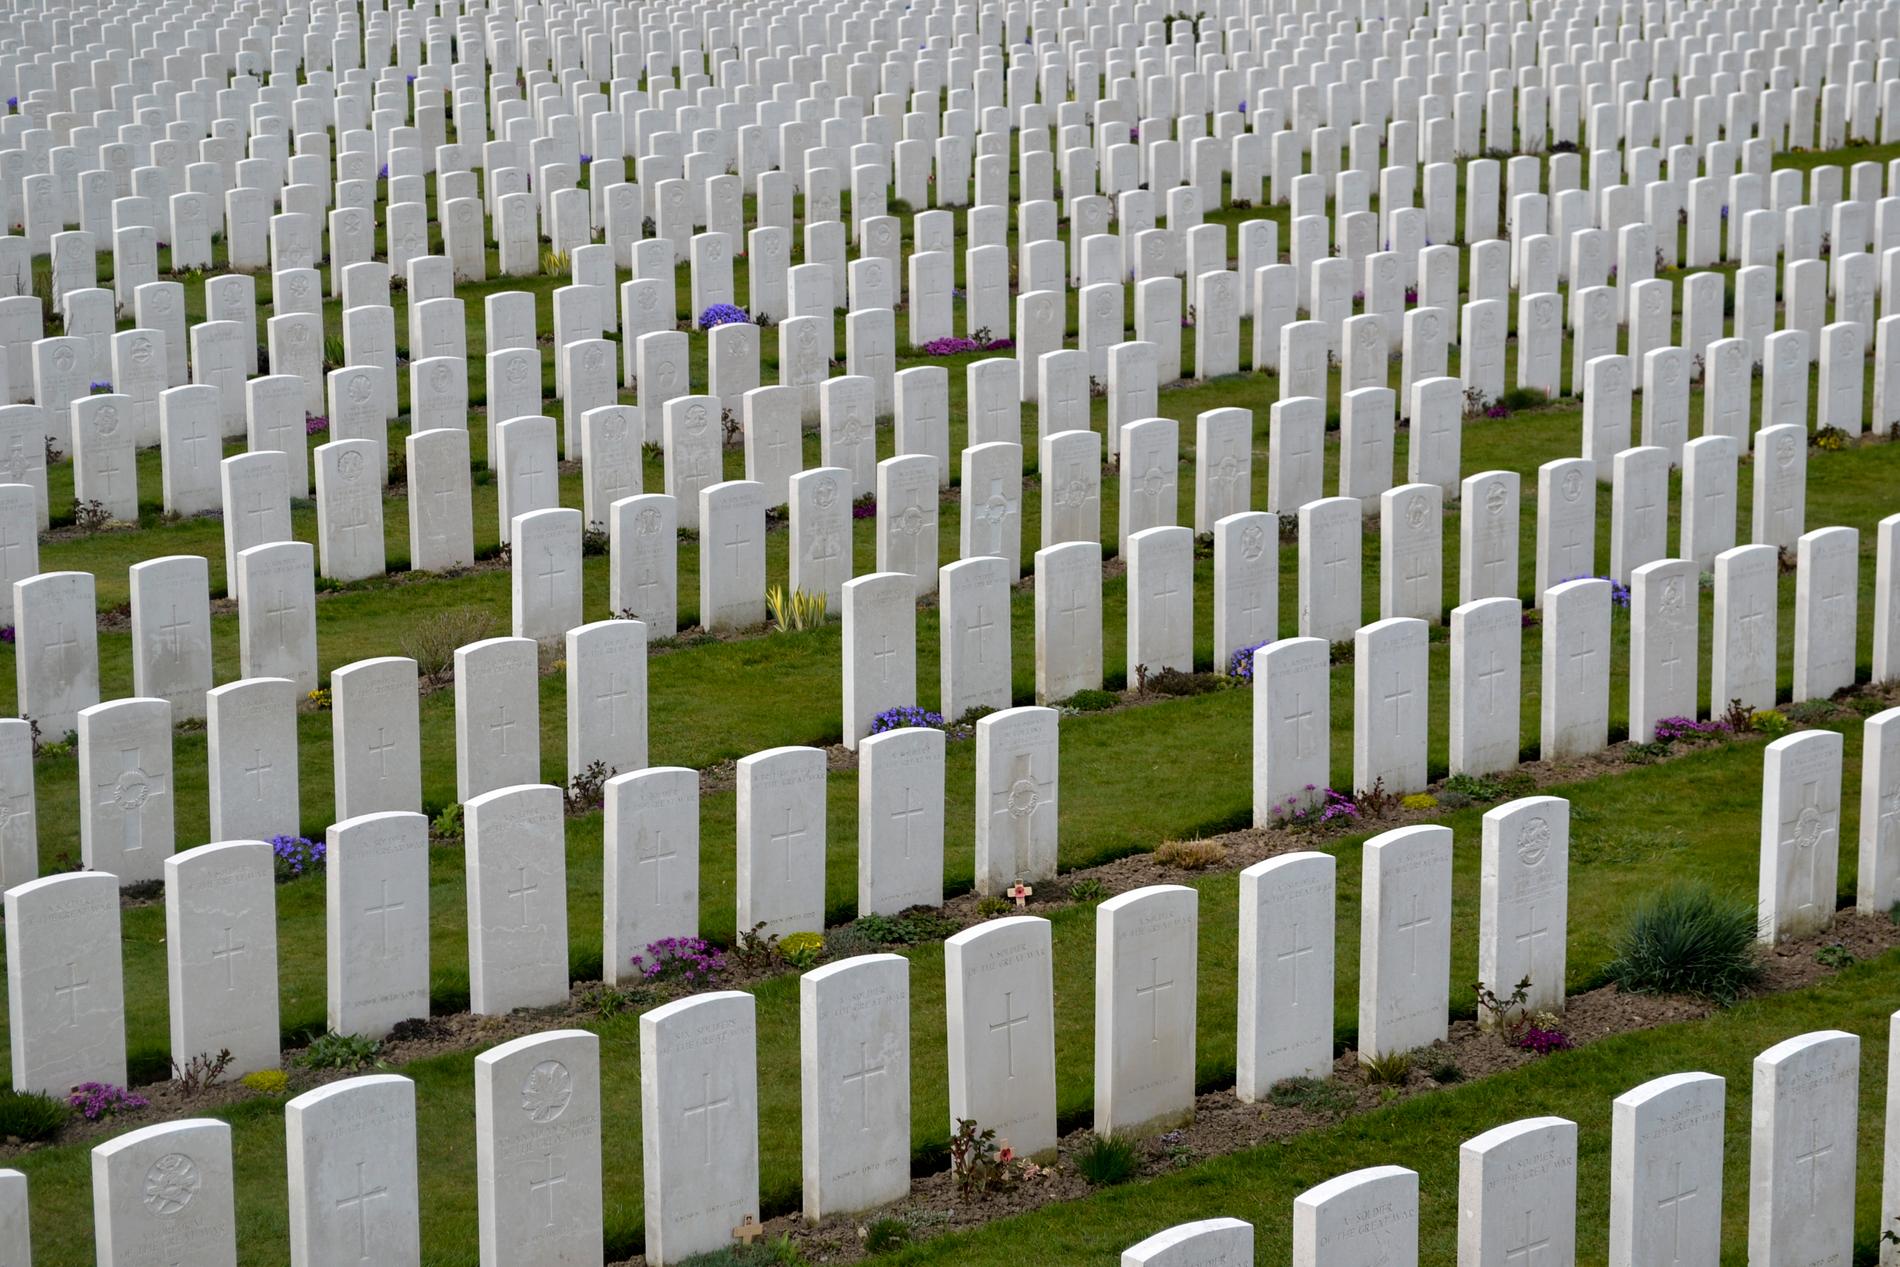 Runt Ypern i västra Belgien finns otaliga monument och kyrkogårdar från första världskriget. På Tyne Cot-kyrkogården ligger kvarlevorna av 12 000 soldater – merparten oidentifierade. På minnestavlorna hedras ytterligare 30 000 döda, vars kvarlevor aldrig hittats.